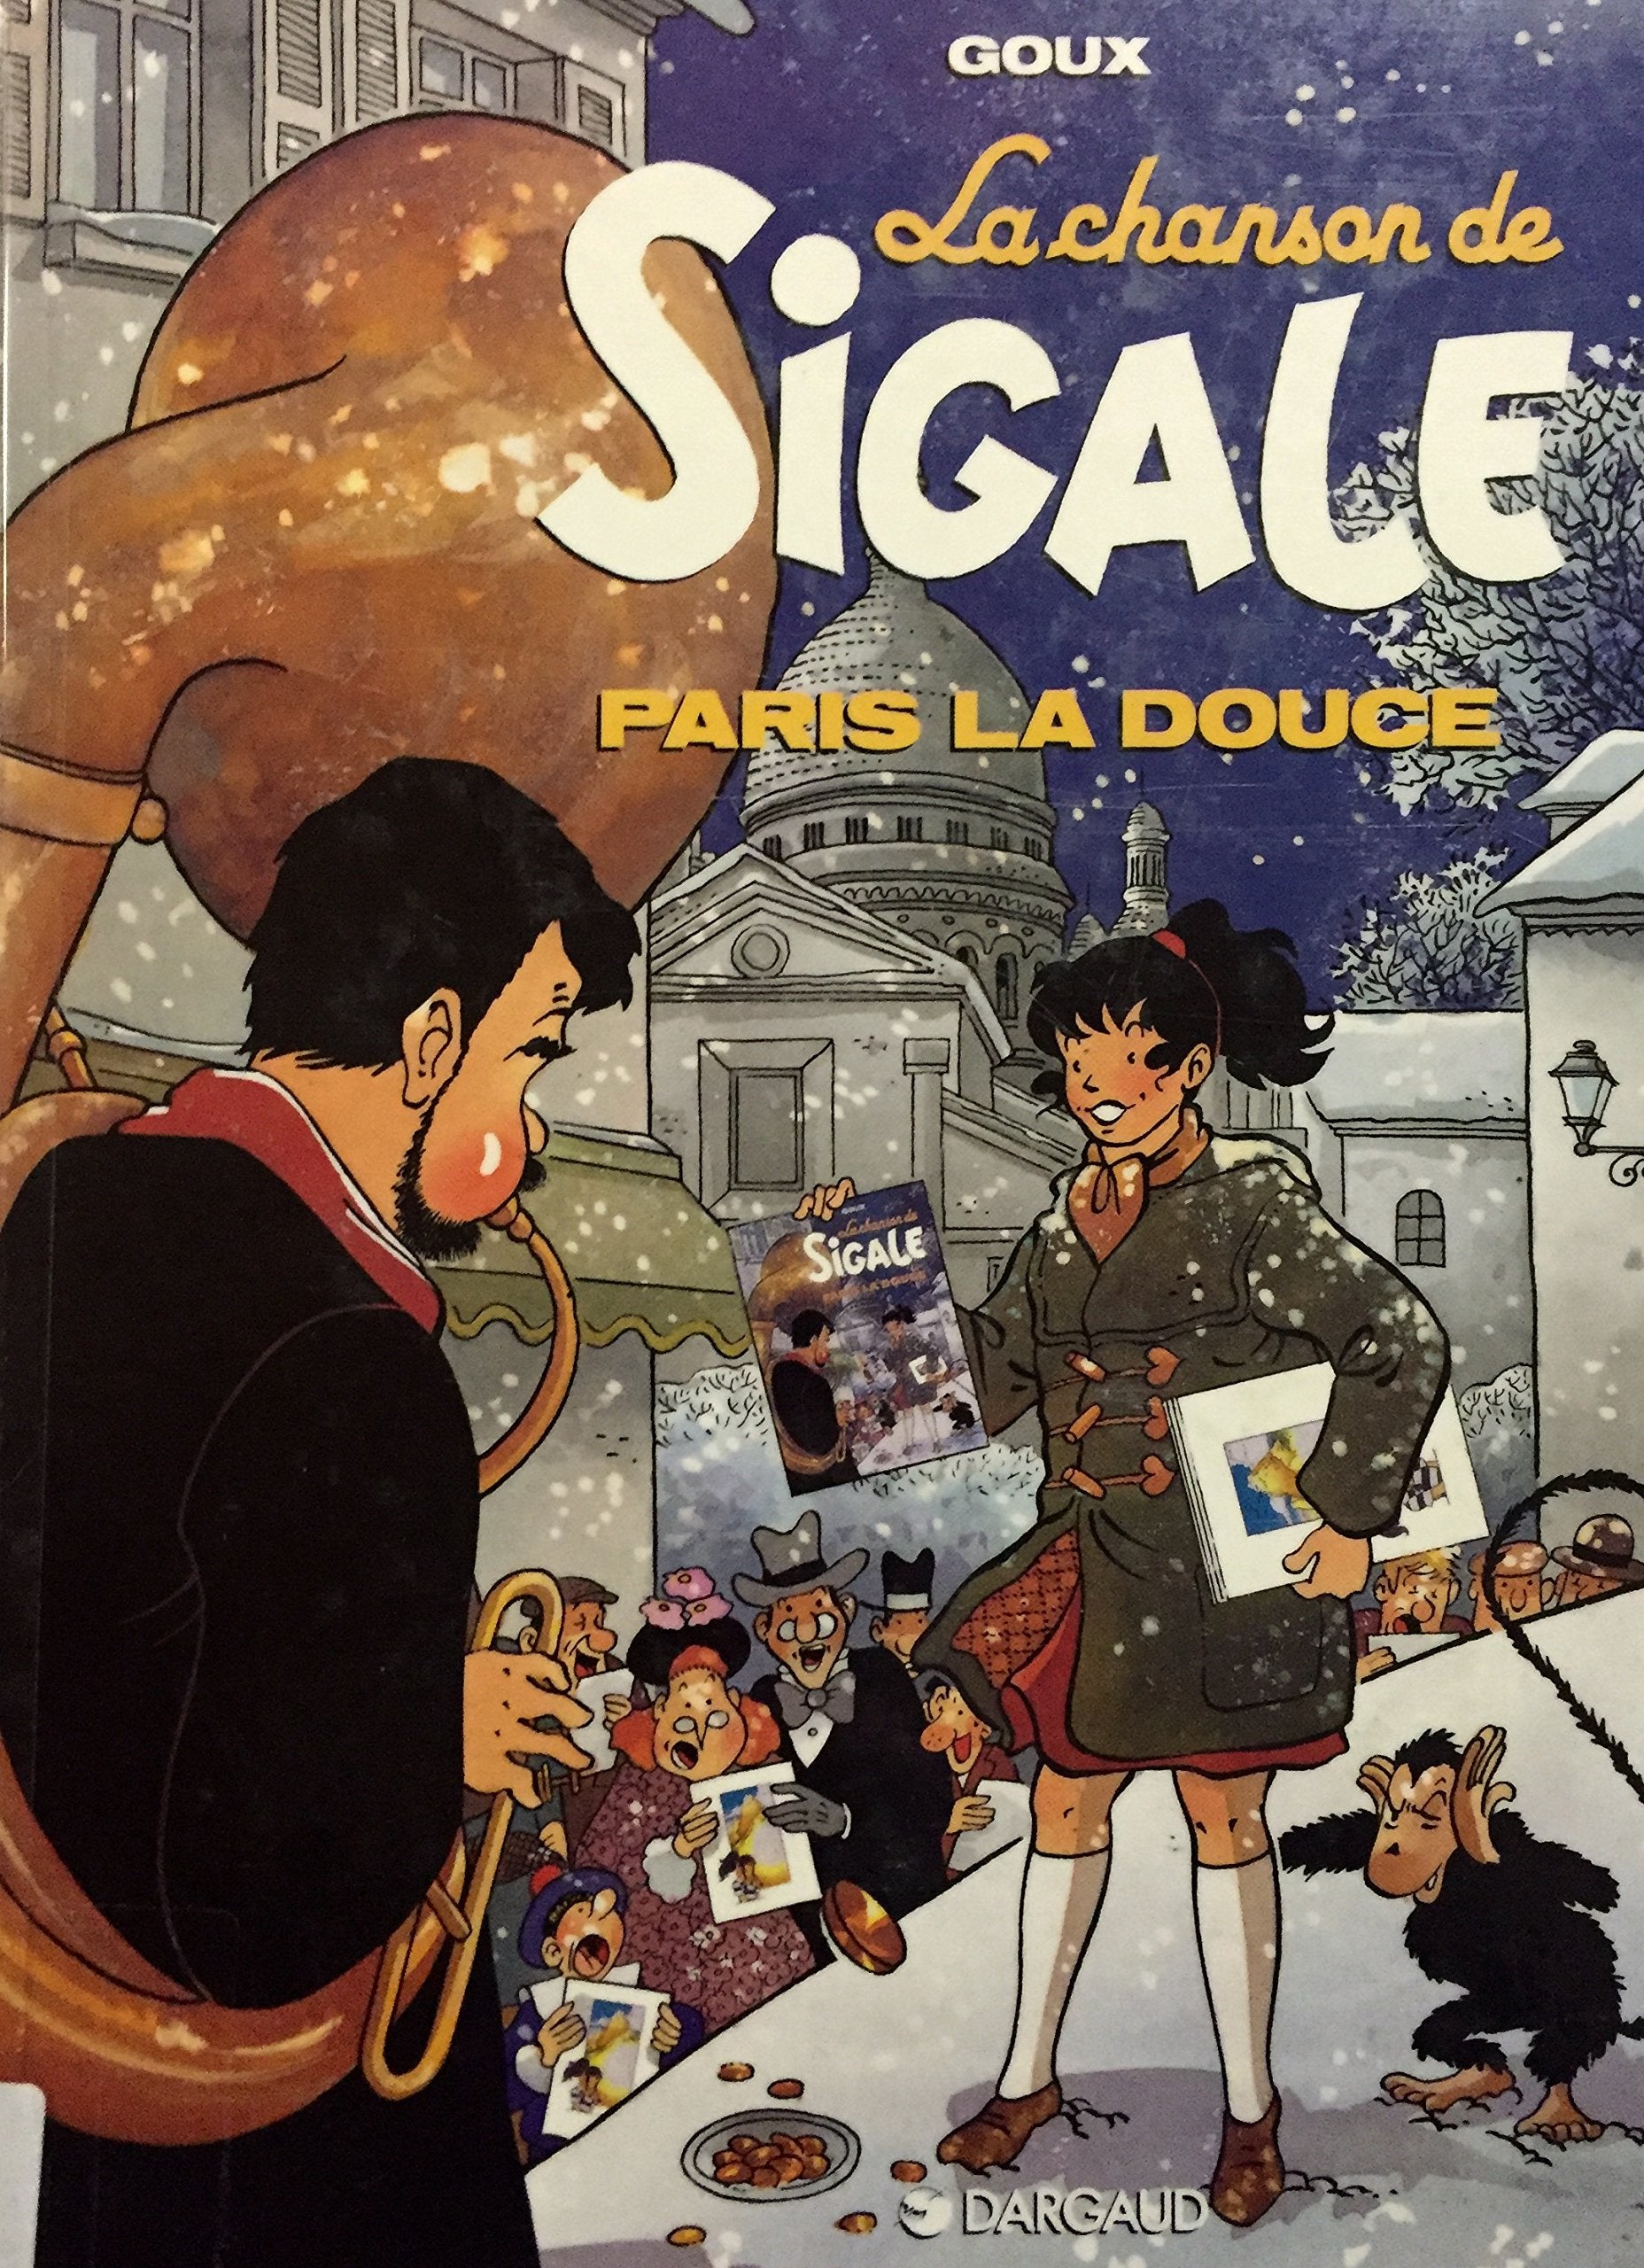 Livre ISBN 2205042491 La chanson de Sigale # 2 : Paris la douce (Goux)